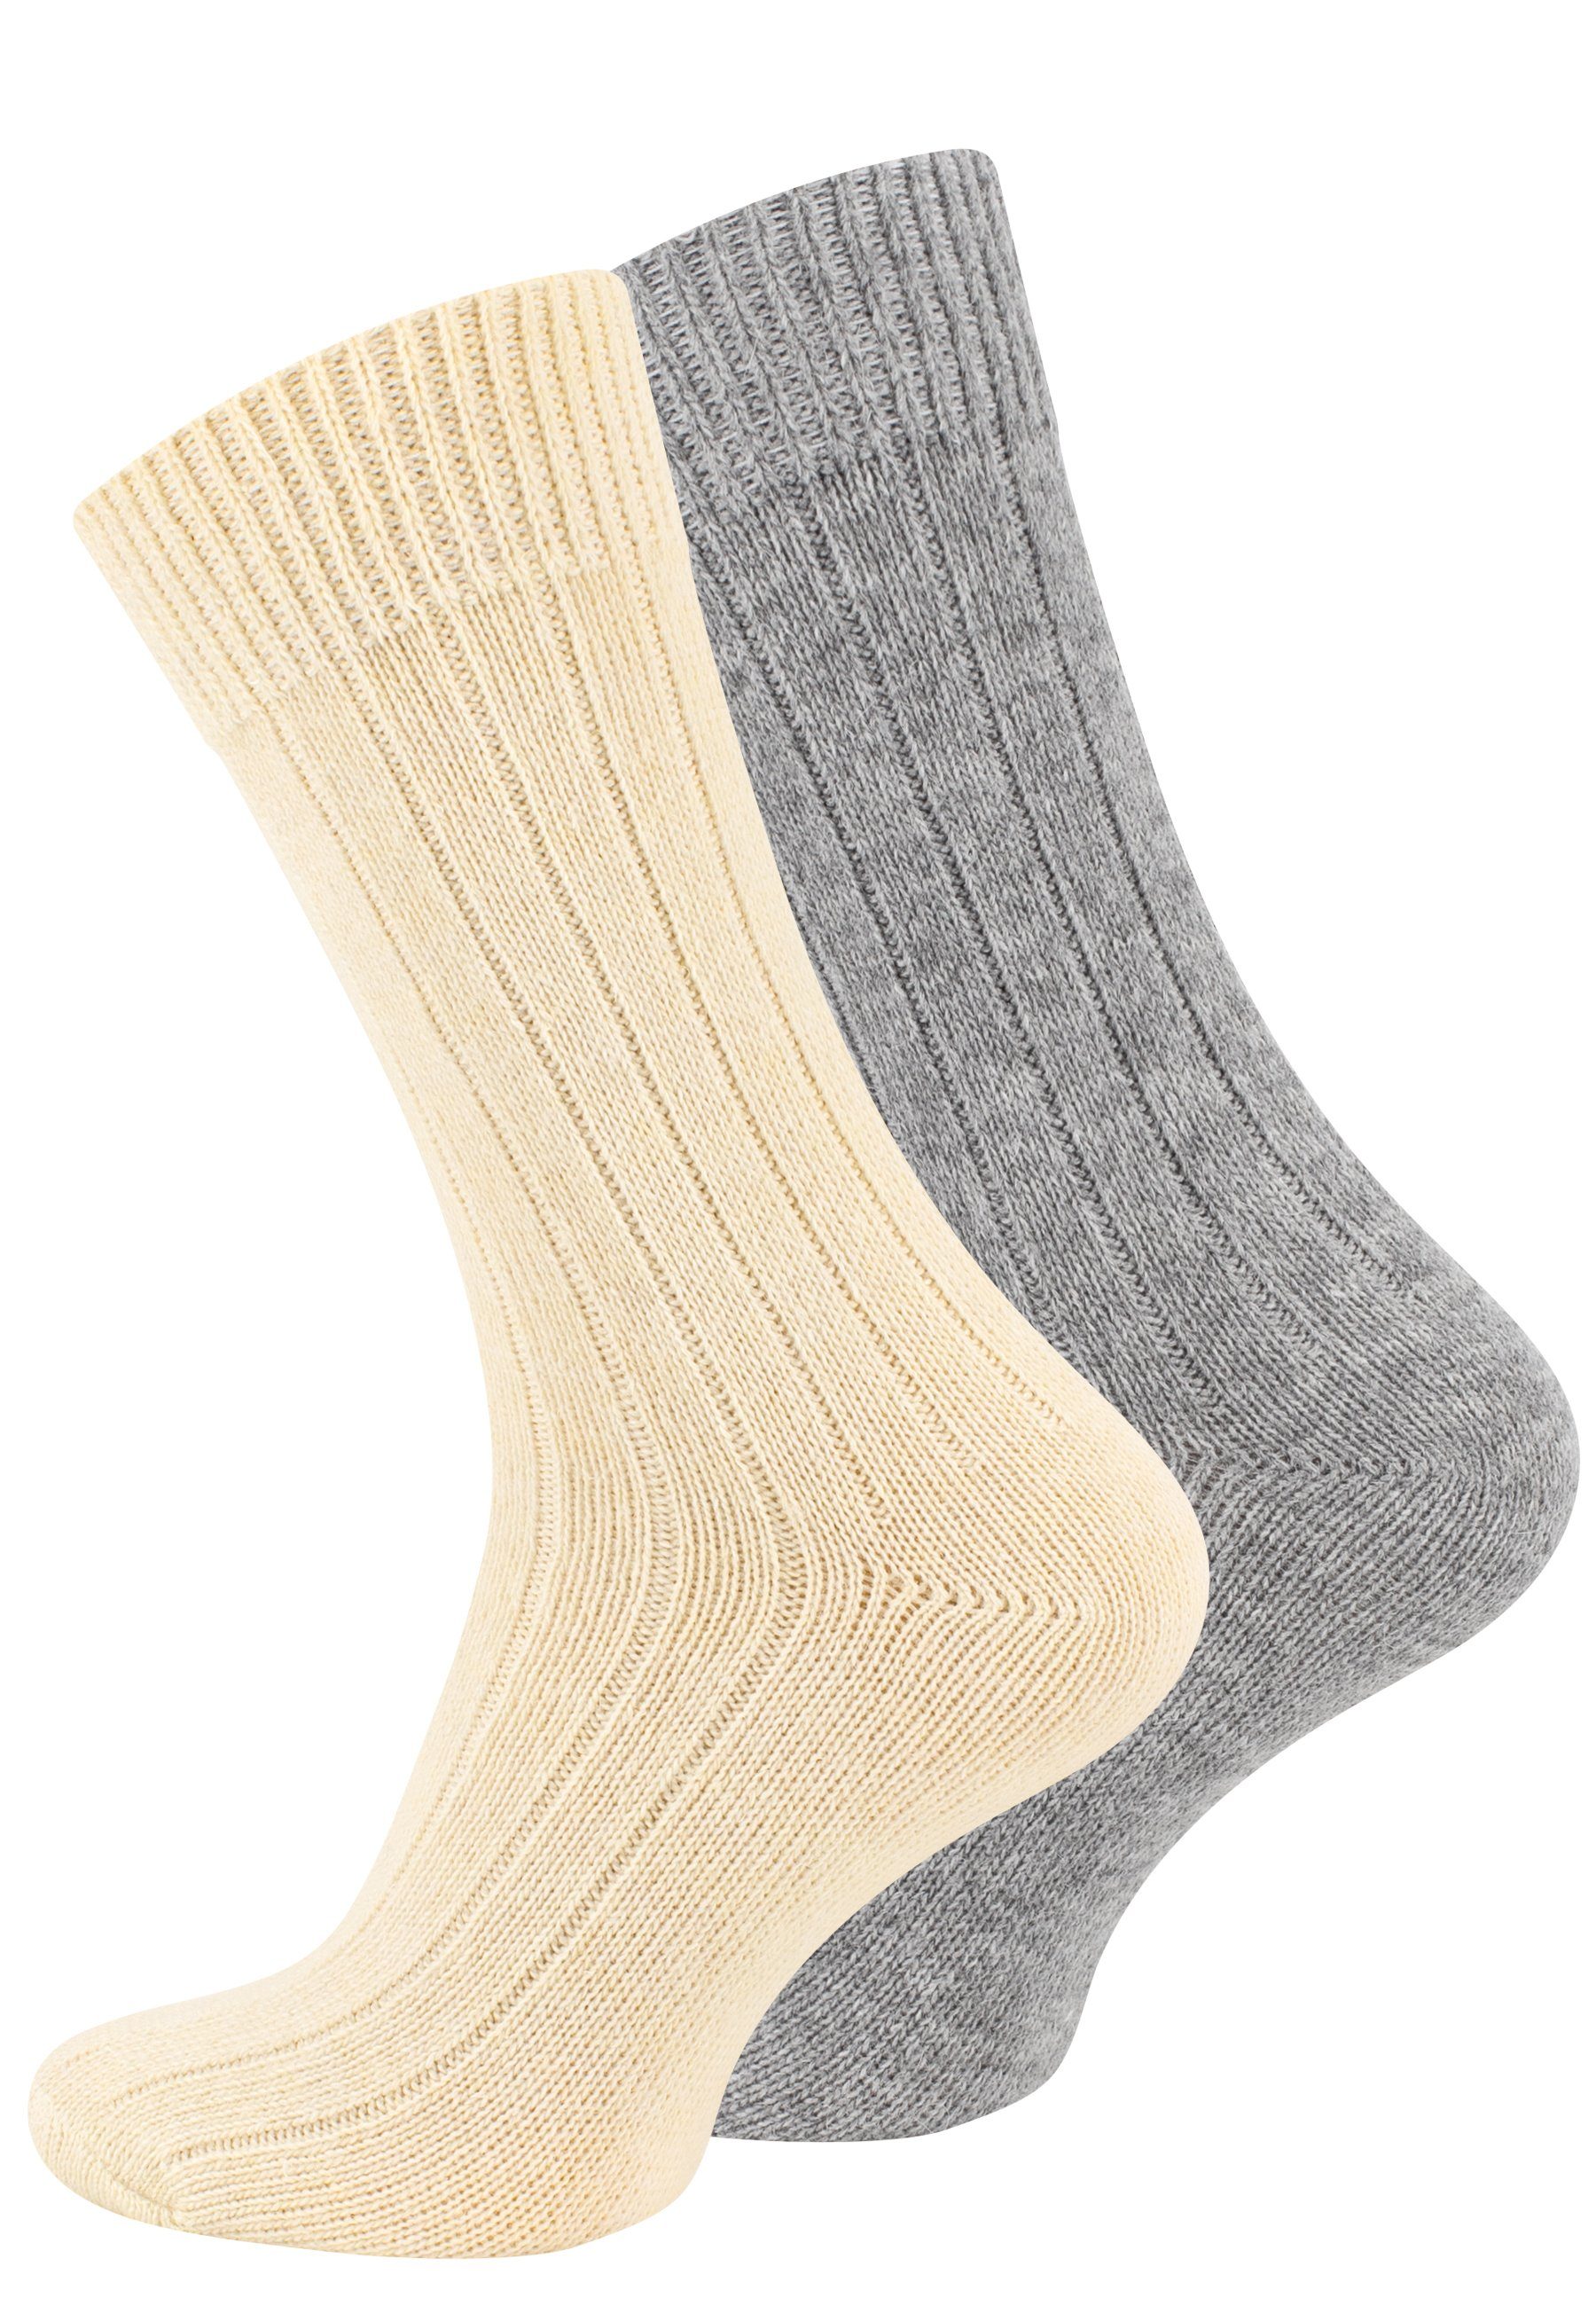 Cotton Prime® Socken Alpaka ökologisch und Socken ecru/hellgrau gefärbt (2-Paar) vorgewaschen